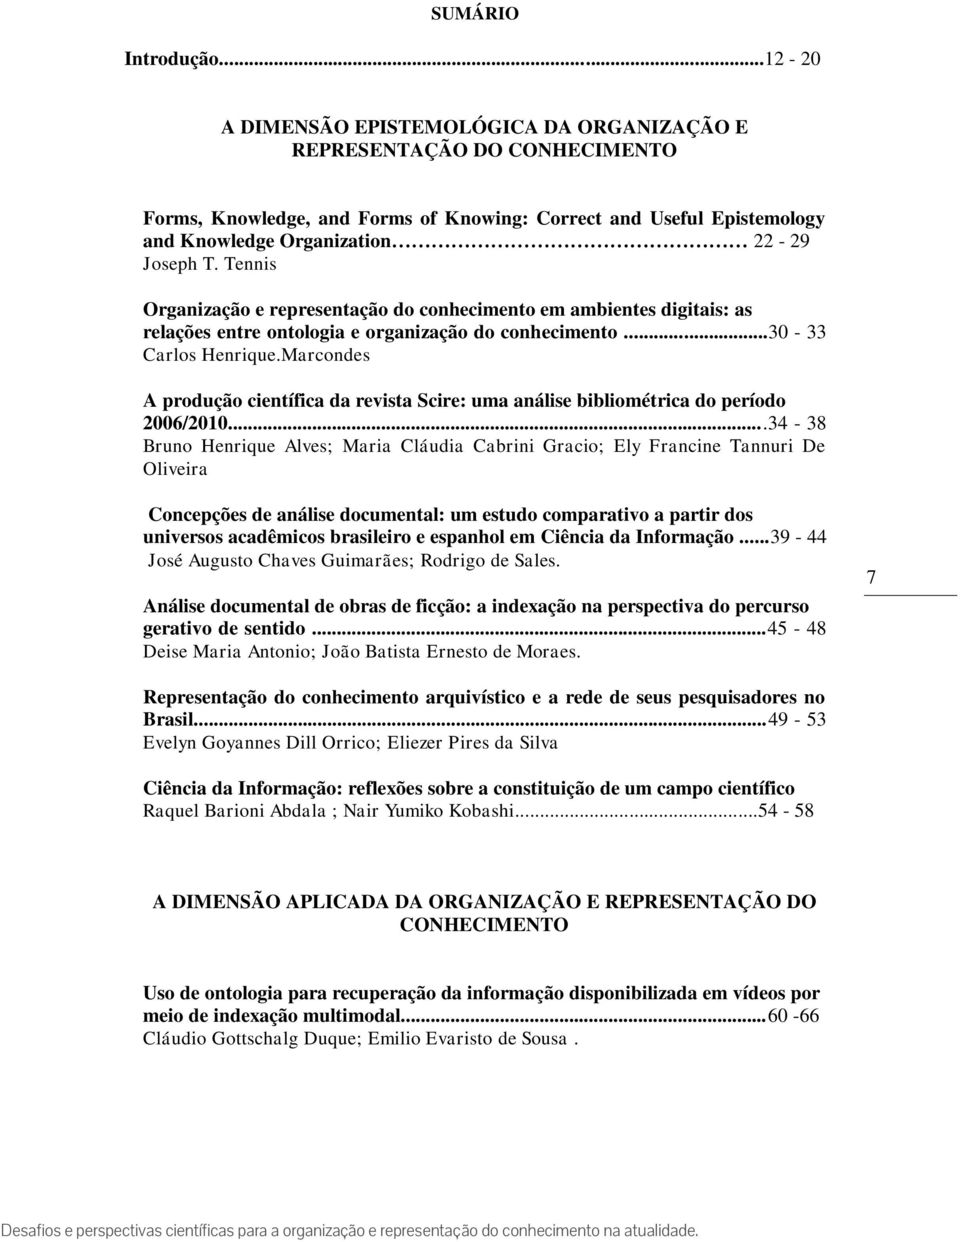 Tennis Organização e representação do conhecimento em ambientes digitais: as relações entre ontologia e organização do conhecimento...30-33 Carlos Henrique.